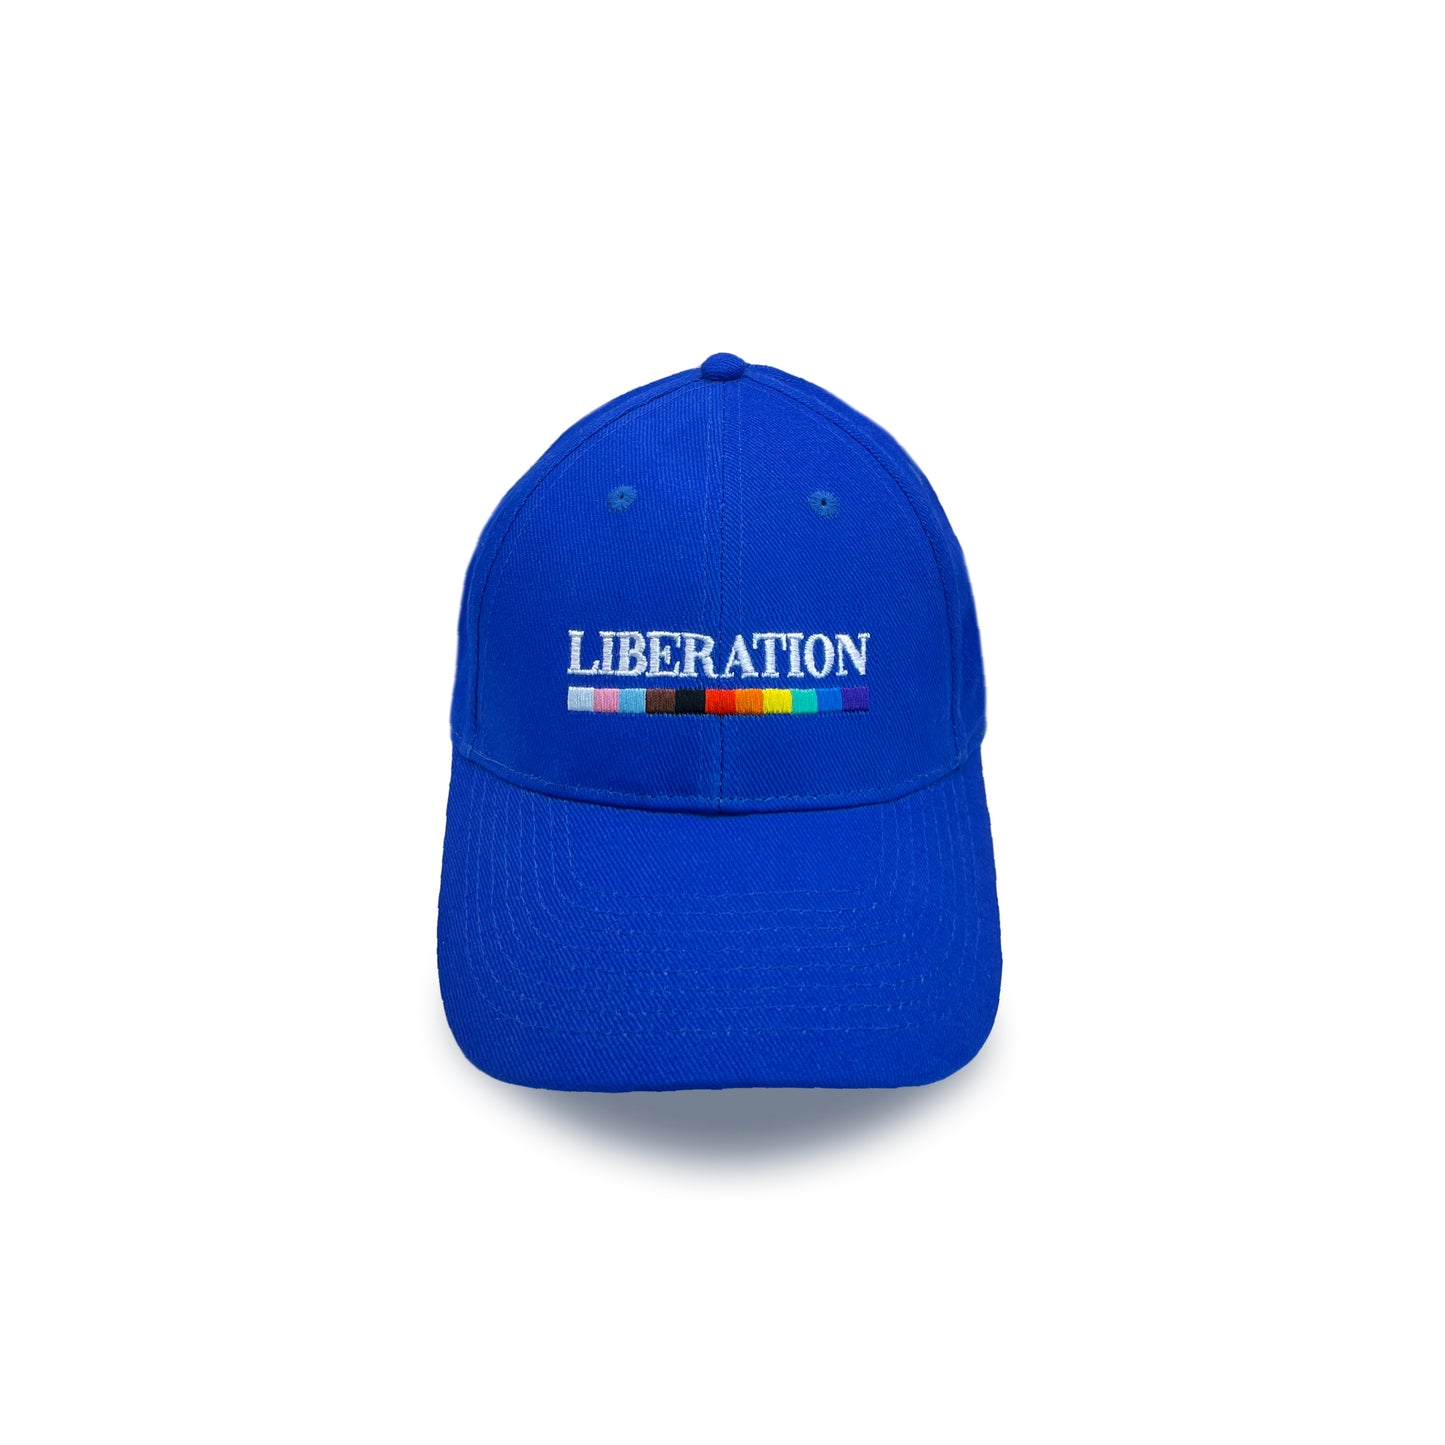 Progress Pride Liberation Cap